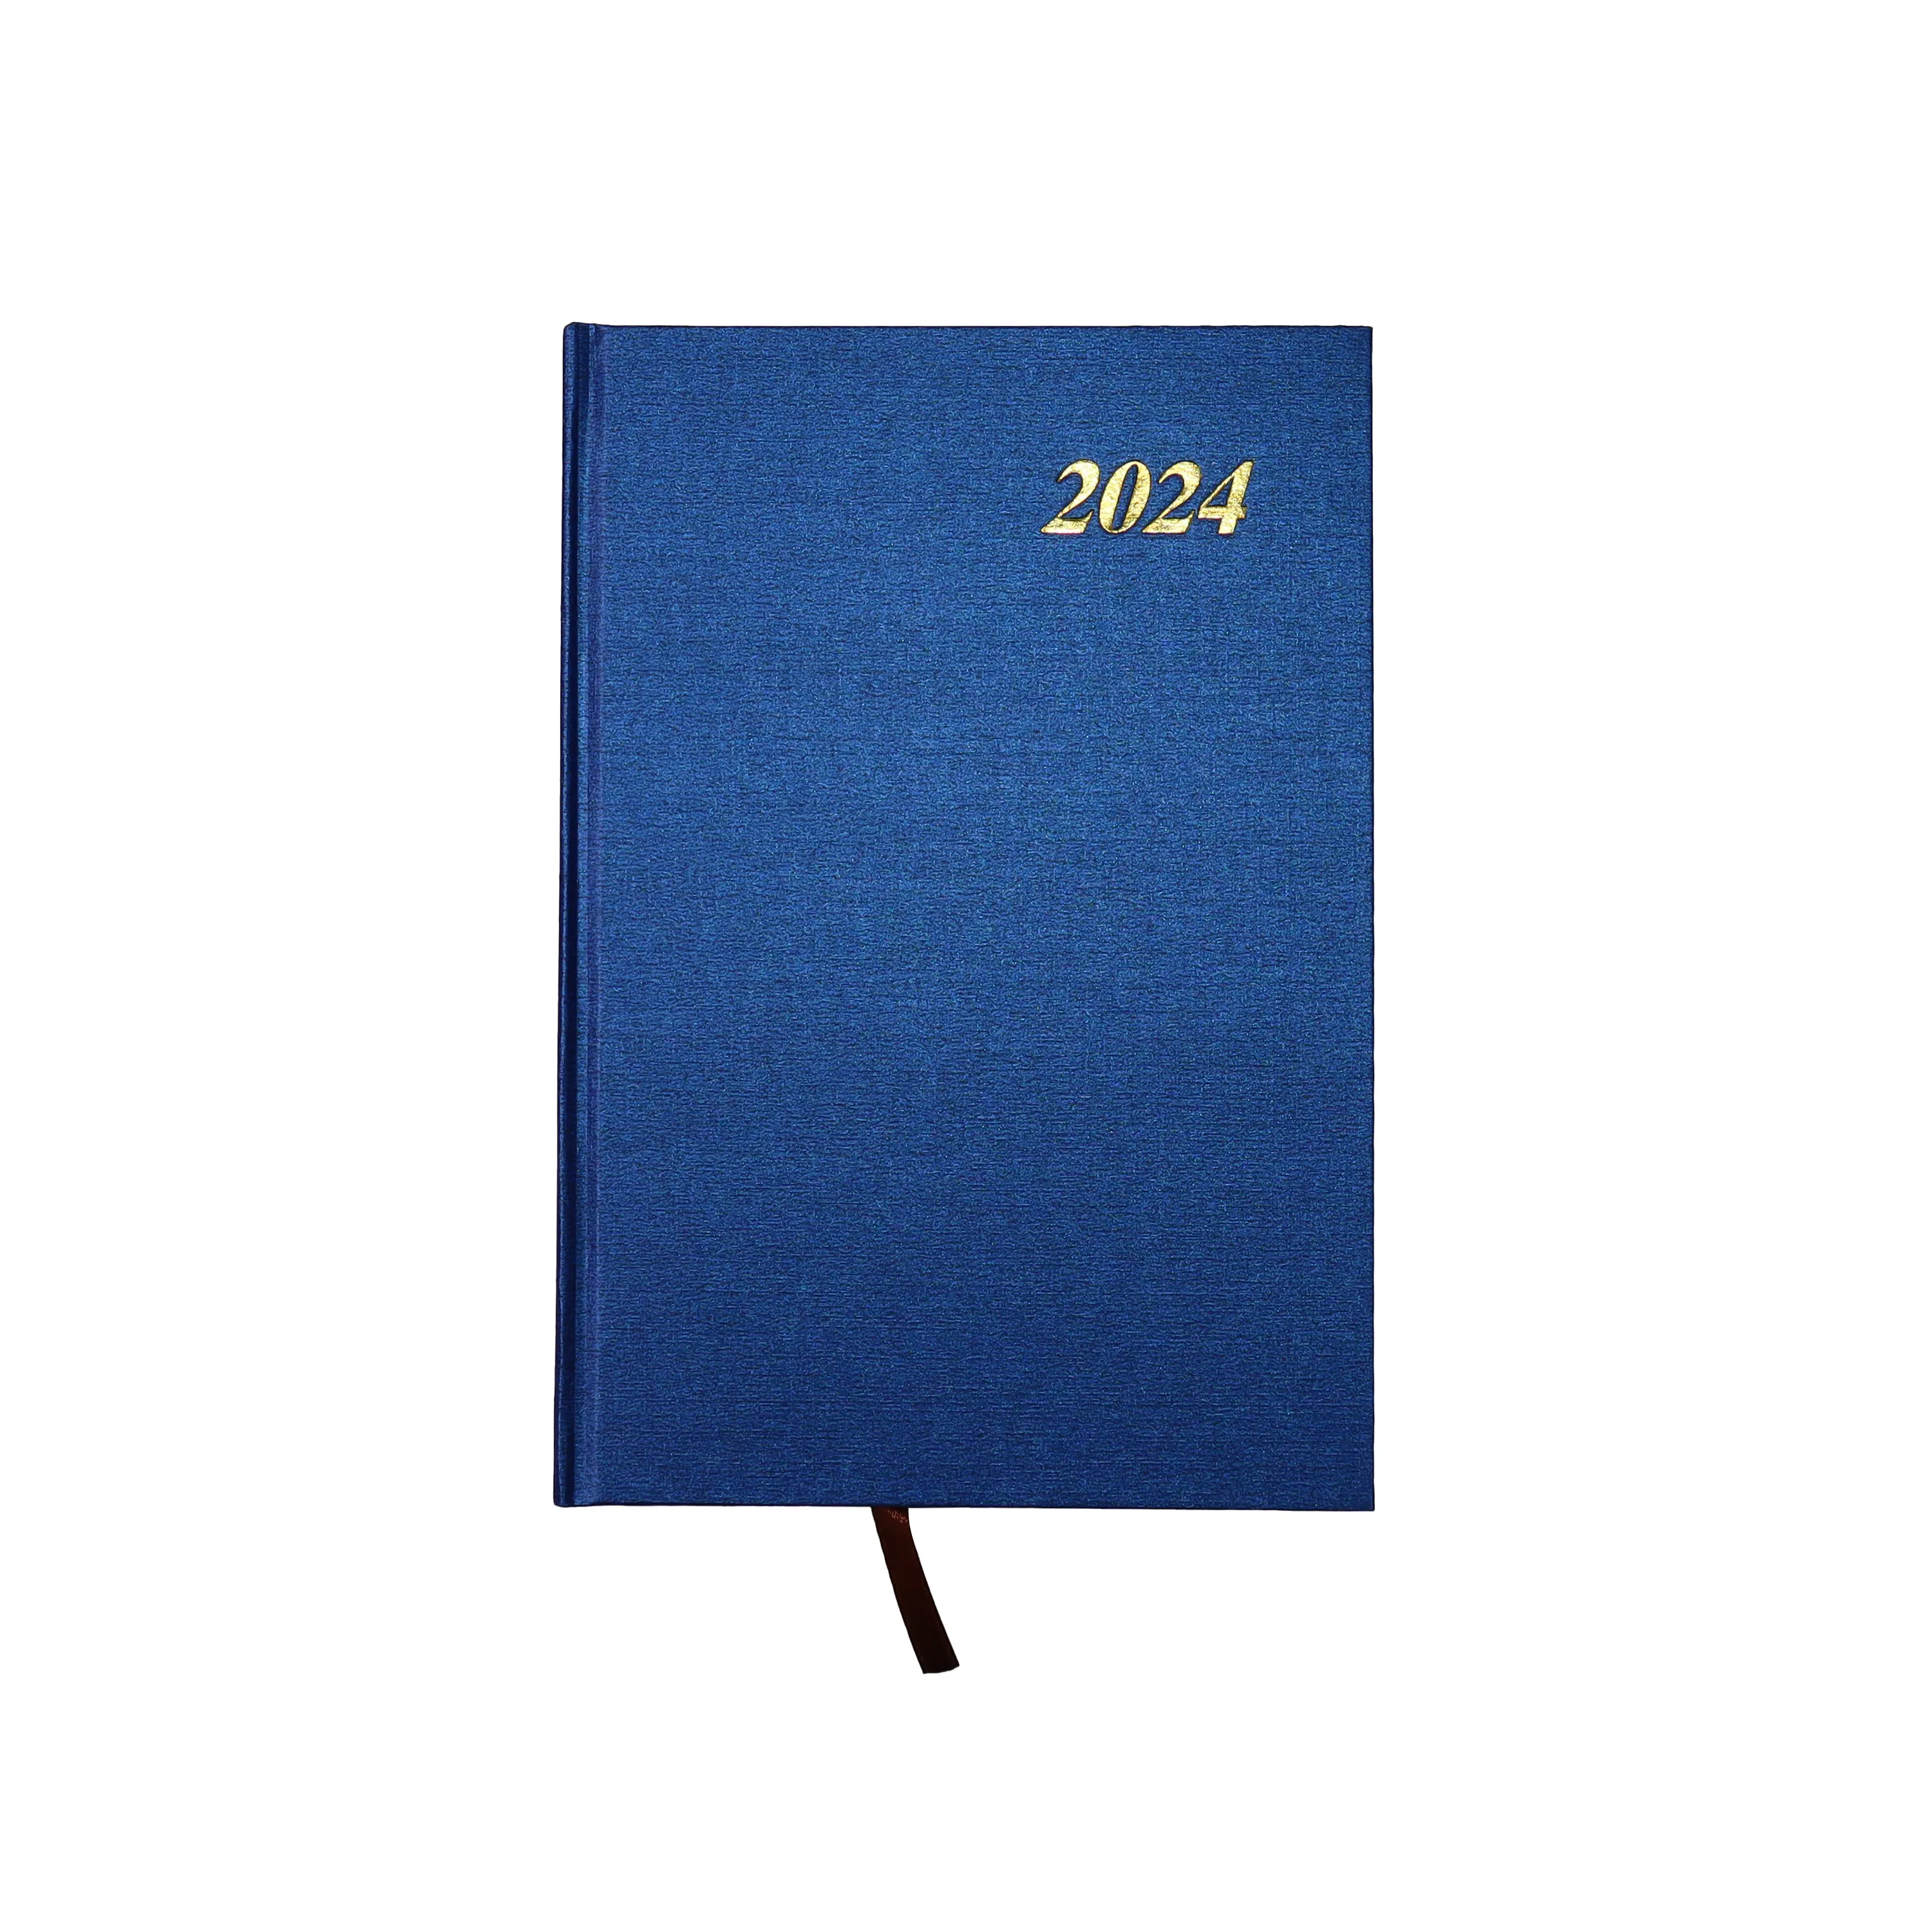 Hot Selling A5 Goedkope Gedateerde Dagelijkse Planner Rechte Hoek Journal Folie Stempel Blauwe Hardcover Notebook